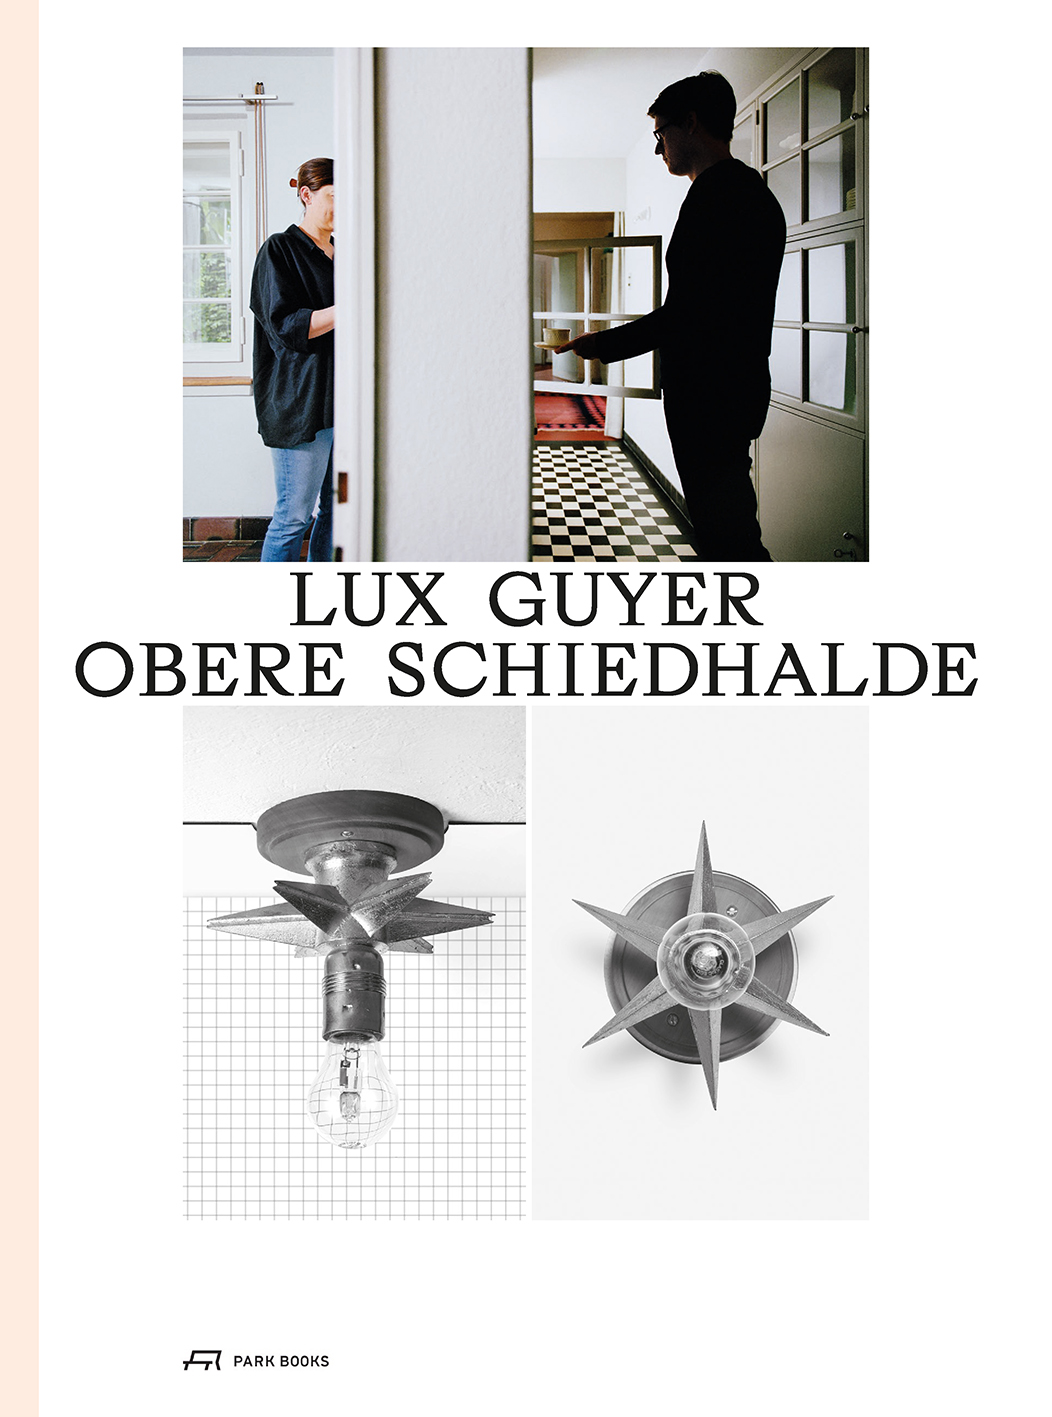 Lux Guyer – Obere Schiedhalde | Park Books